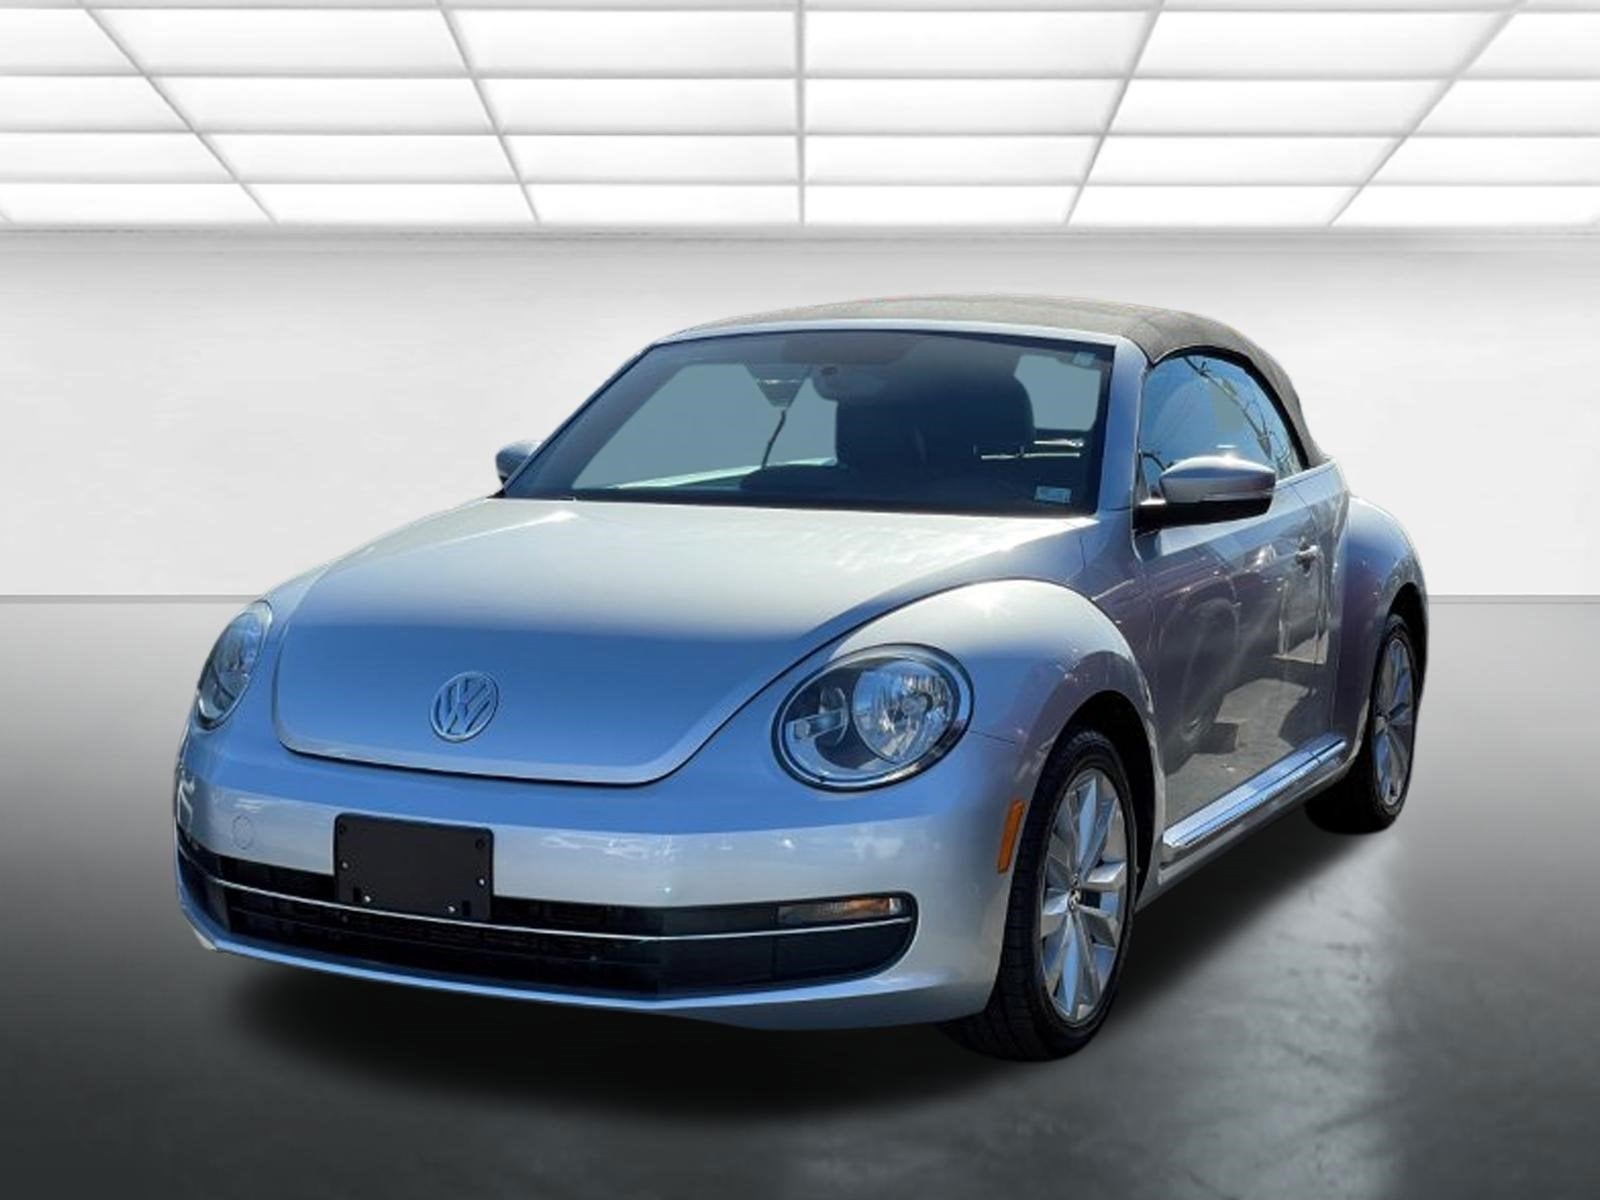 2014 Volkswagen Beetle Convertible 2.0L TDI w/Sound/Nav